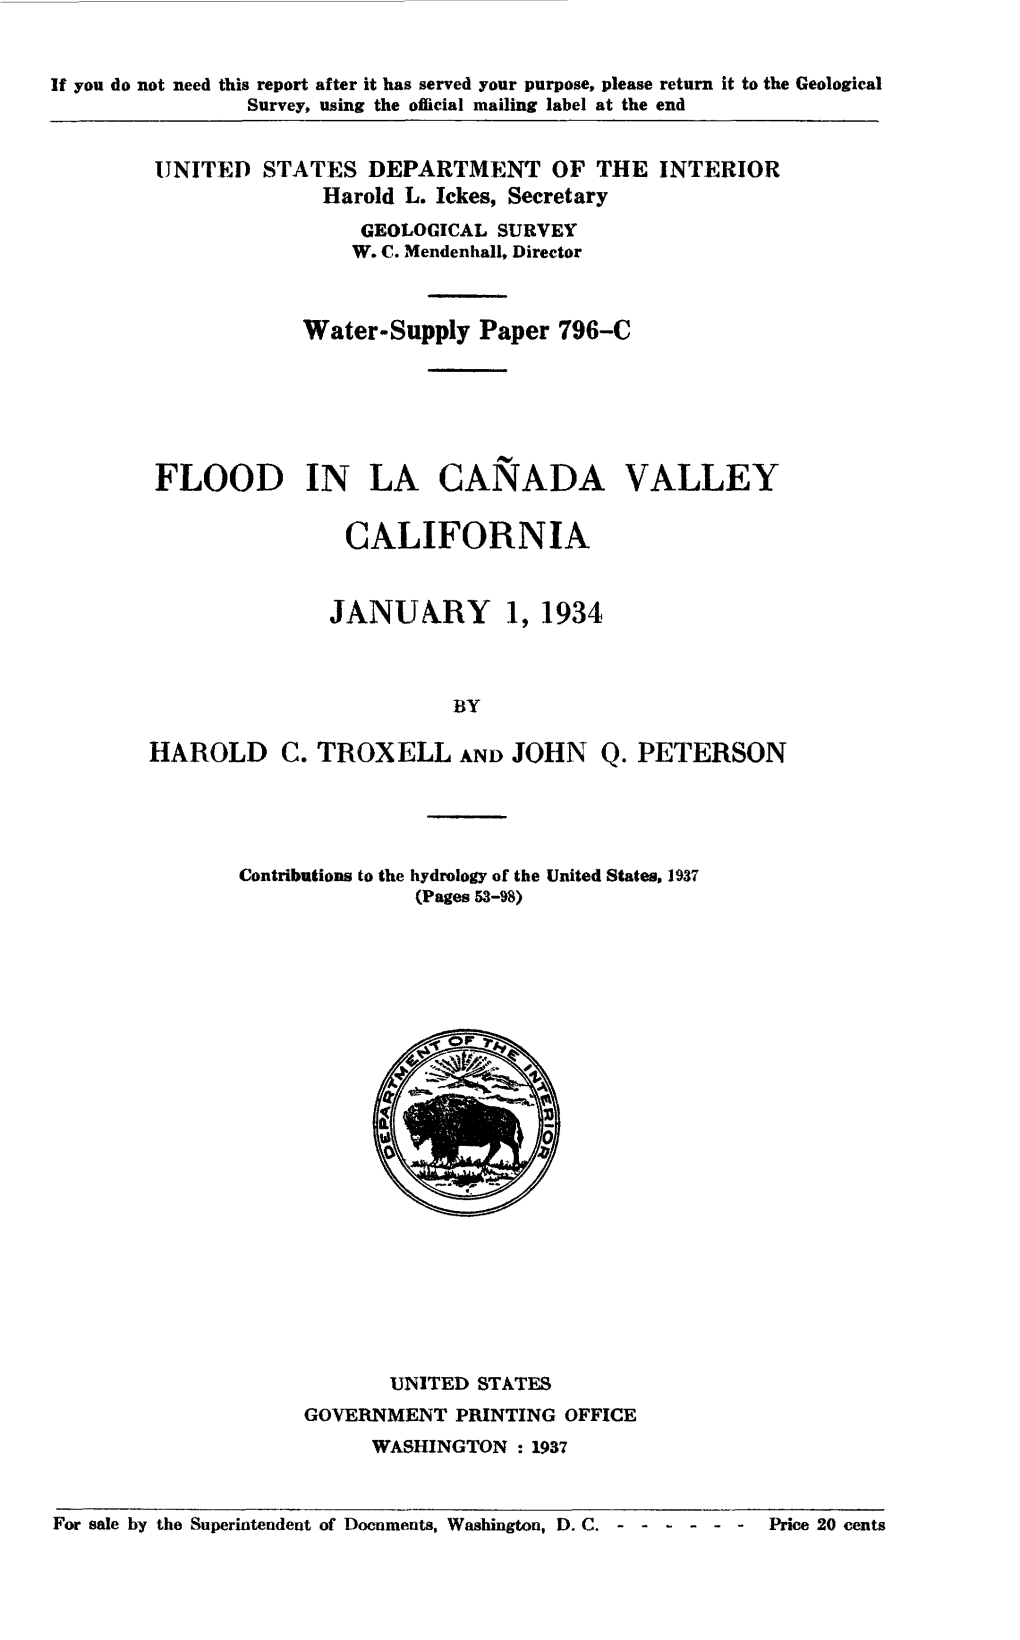 Flood in La Canada Valley California